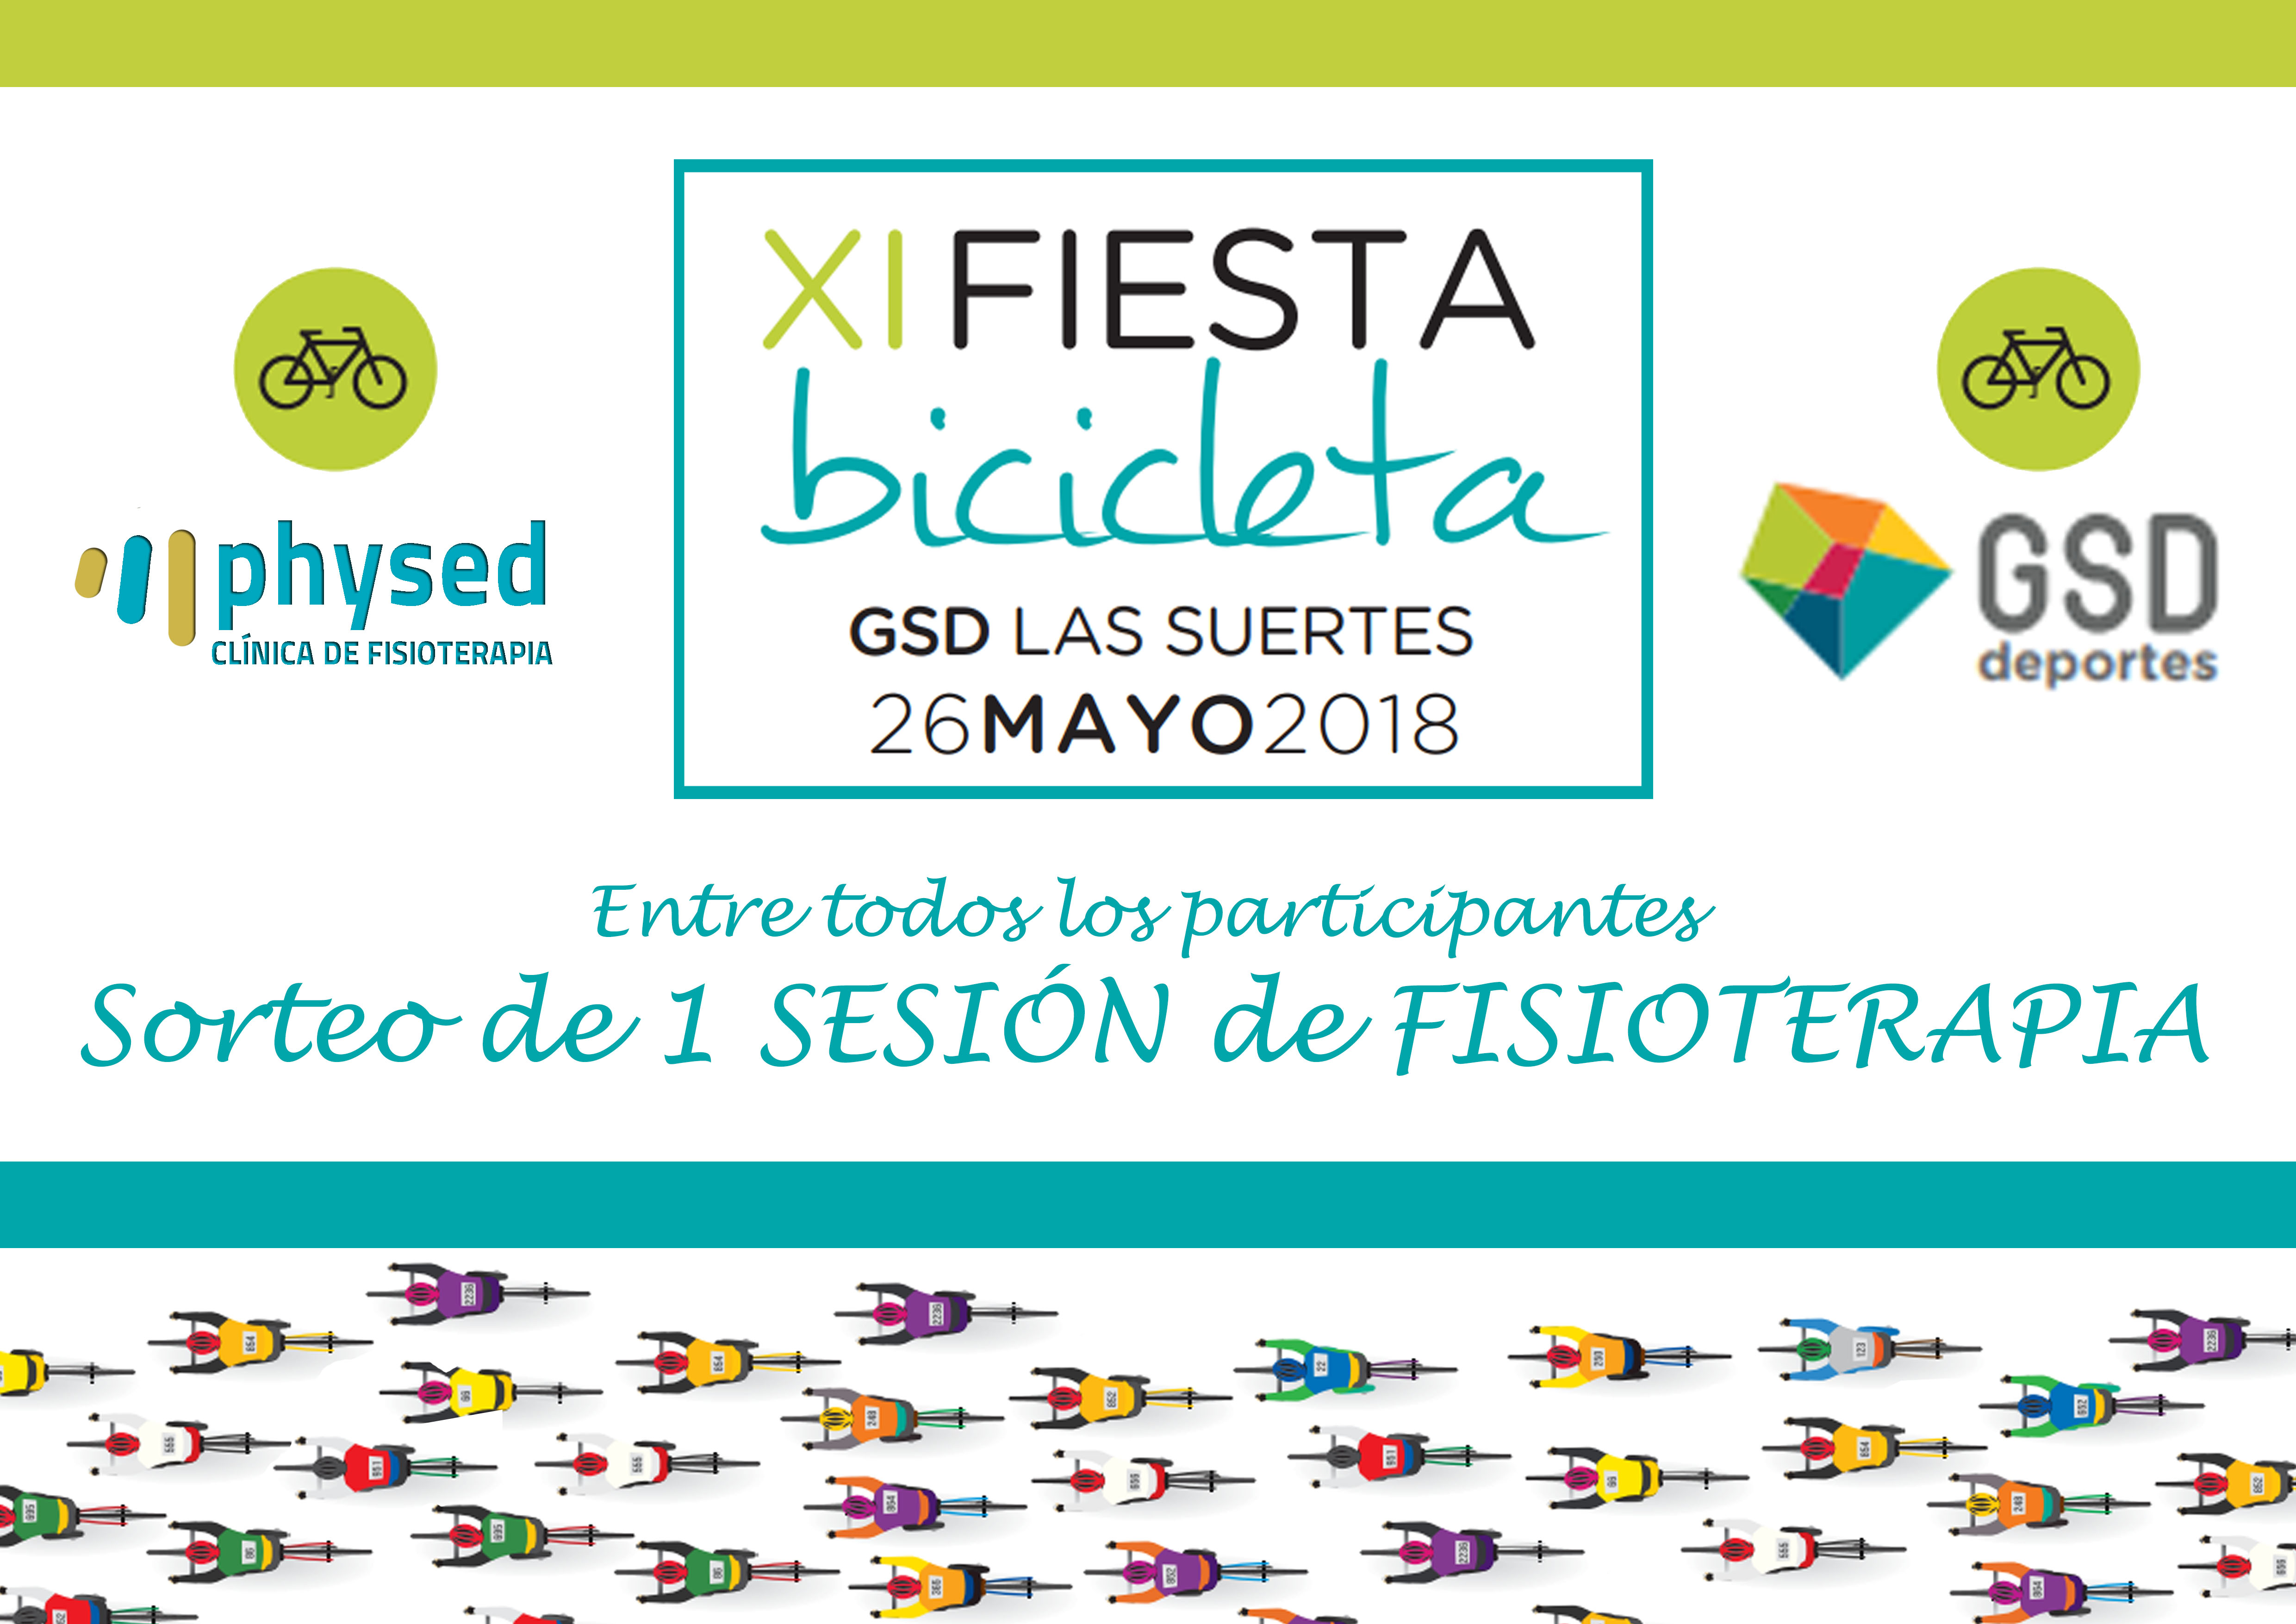 Physed en la «Fiesta de la Bicicleta GSD»